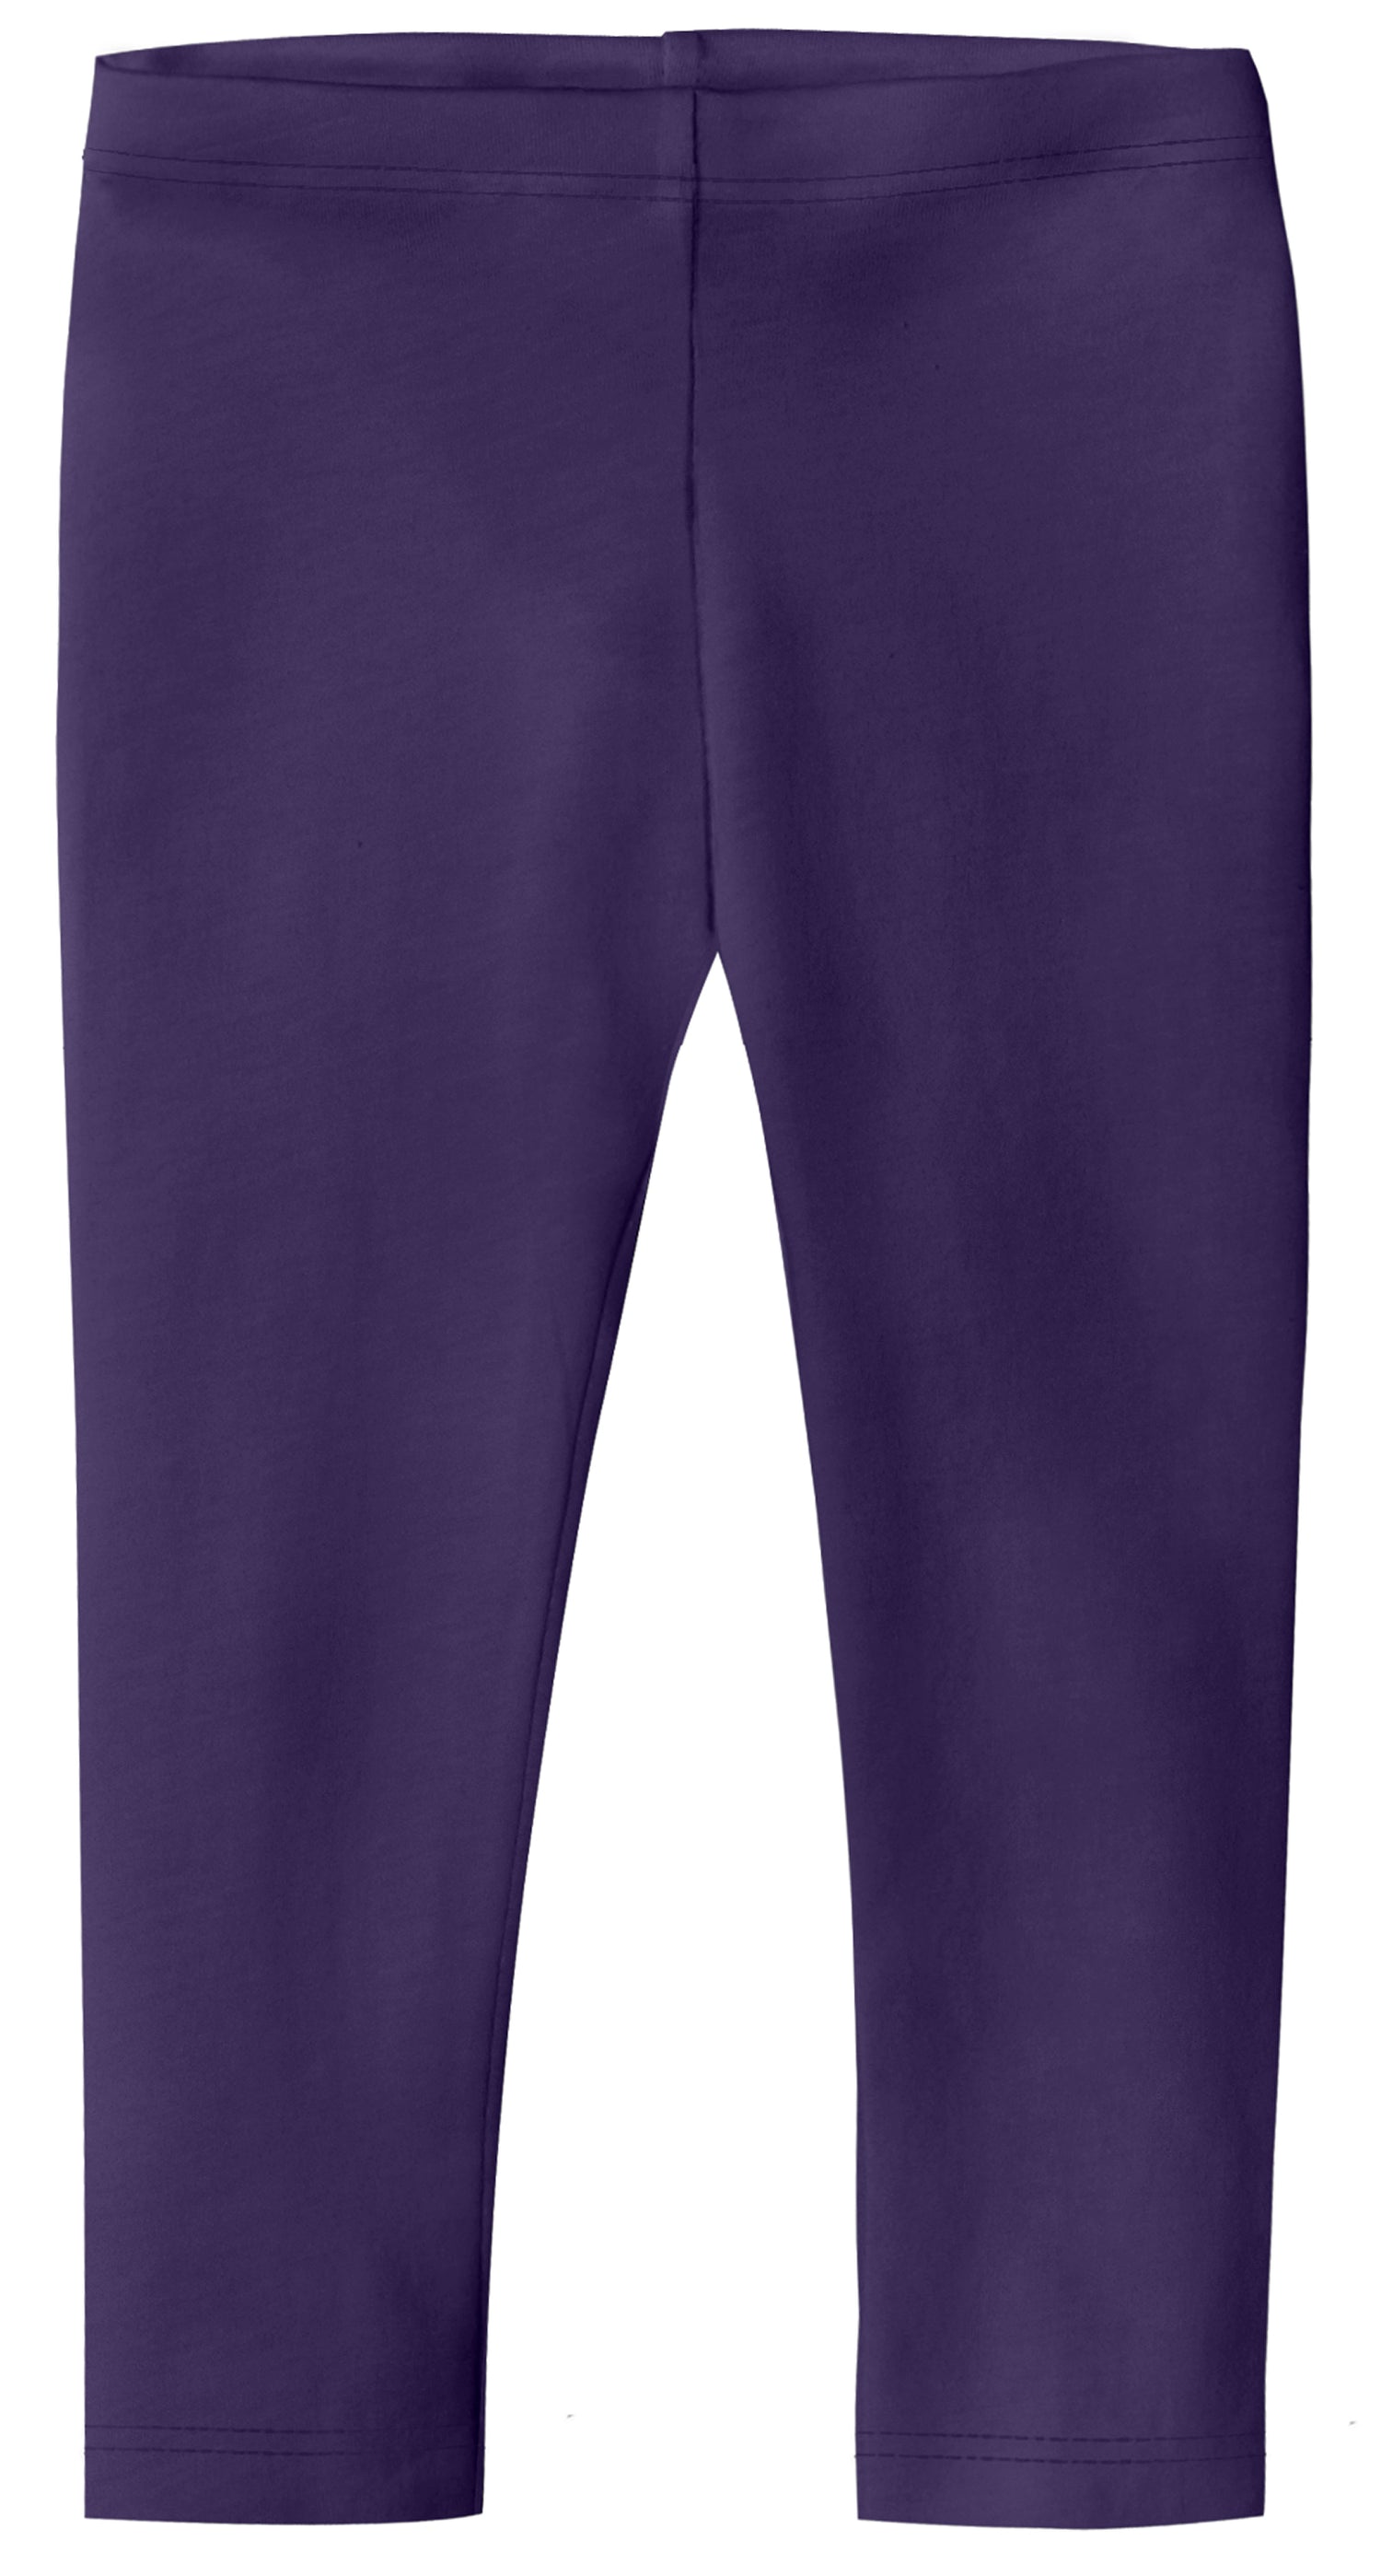 Gray and Purple Cropped Capri Leggings, 16.75 Inch Inseam 22 Inch